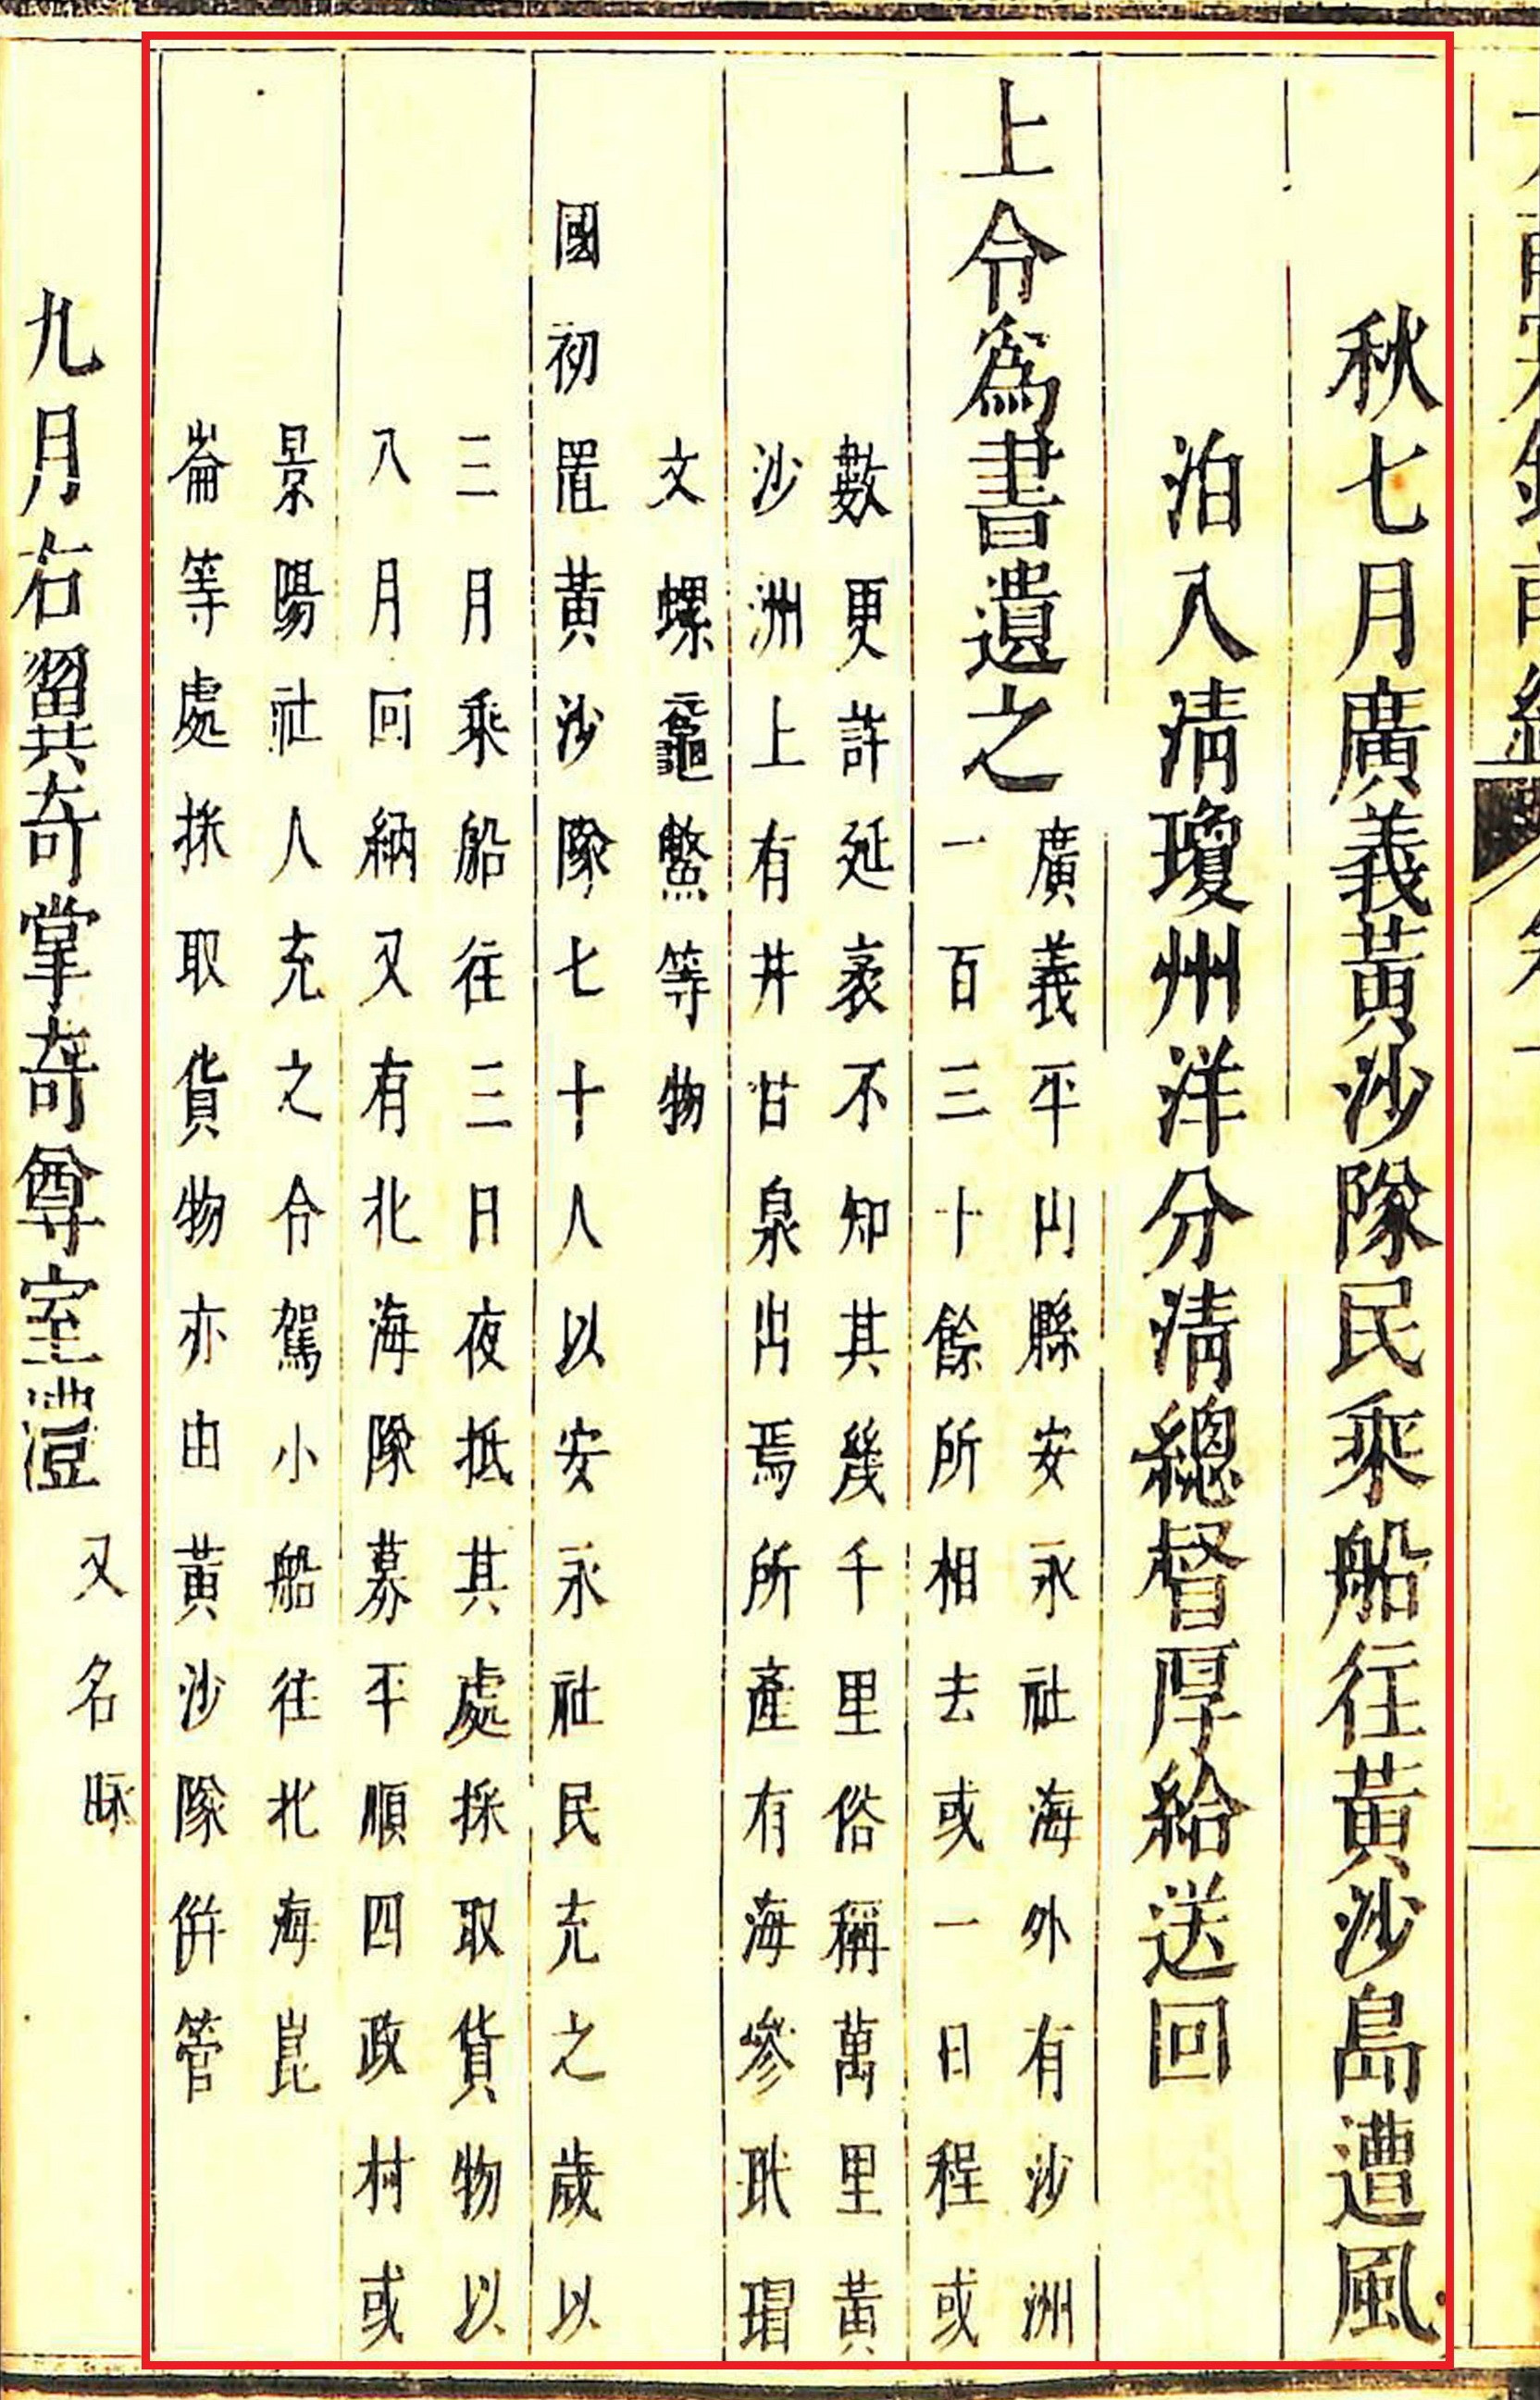 Đoạn viết về hoạt động của đội Hoàng Sa vào năm 1754 trong sách Đại Việt sử ký tục biên, biên soạn vào thời Lê - Trịnh.